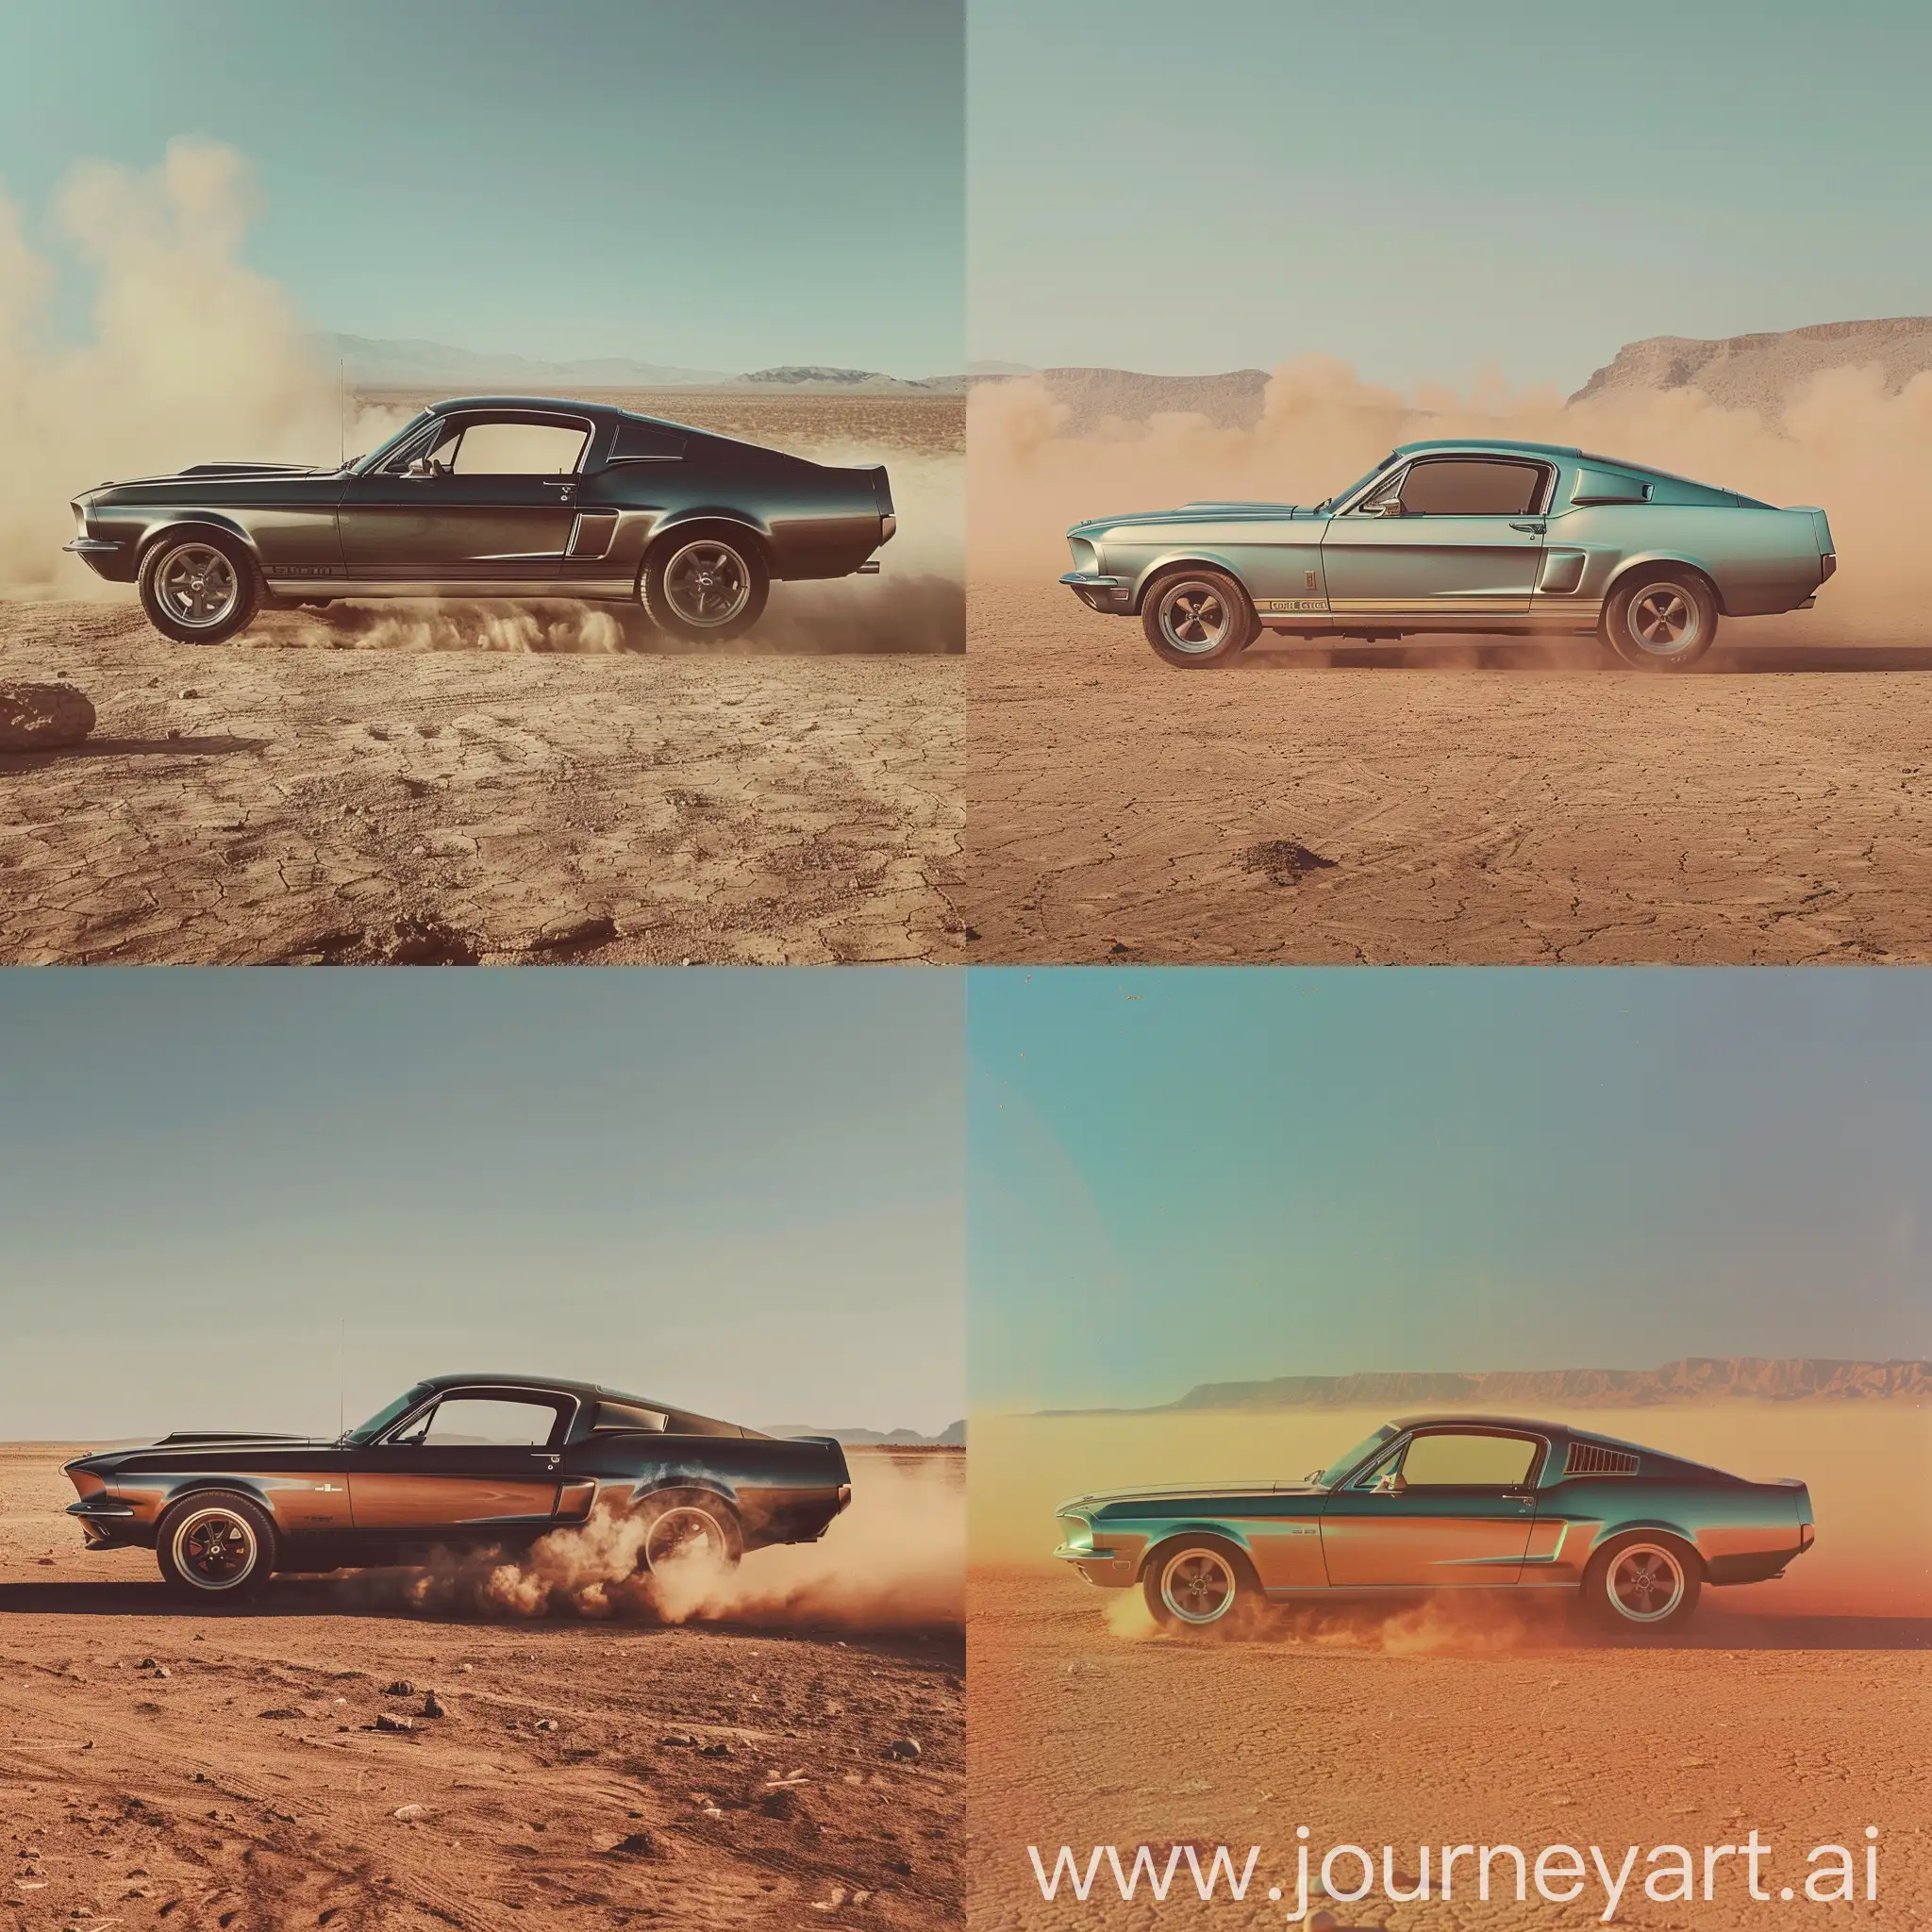  صورة جانبية و بعيدة لسيارة ford mustang 1967 في الصحراء, الغبارر يحيط بالسيارة, الصورة ماخودة بهاتف iphone 14, الوان الصورة عادية بدون فلتر